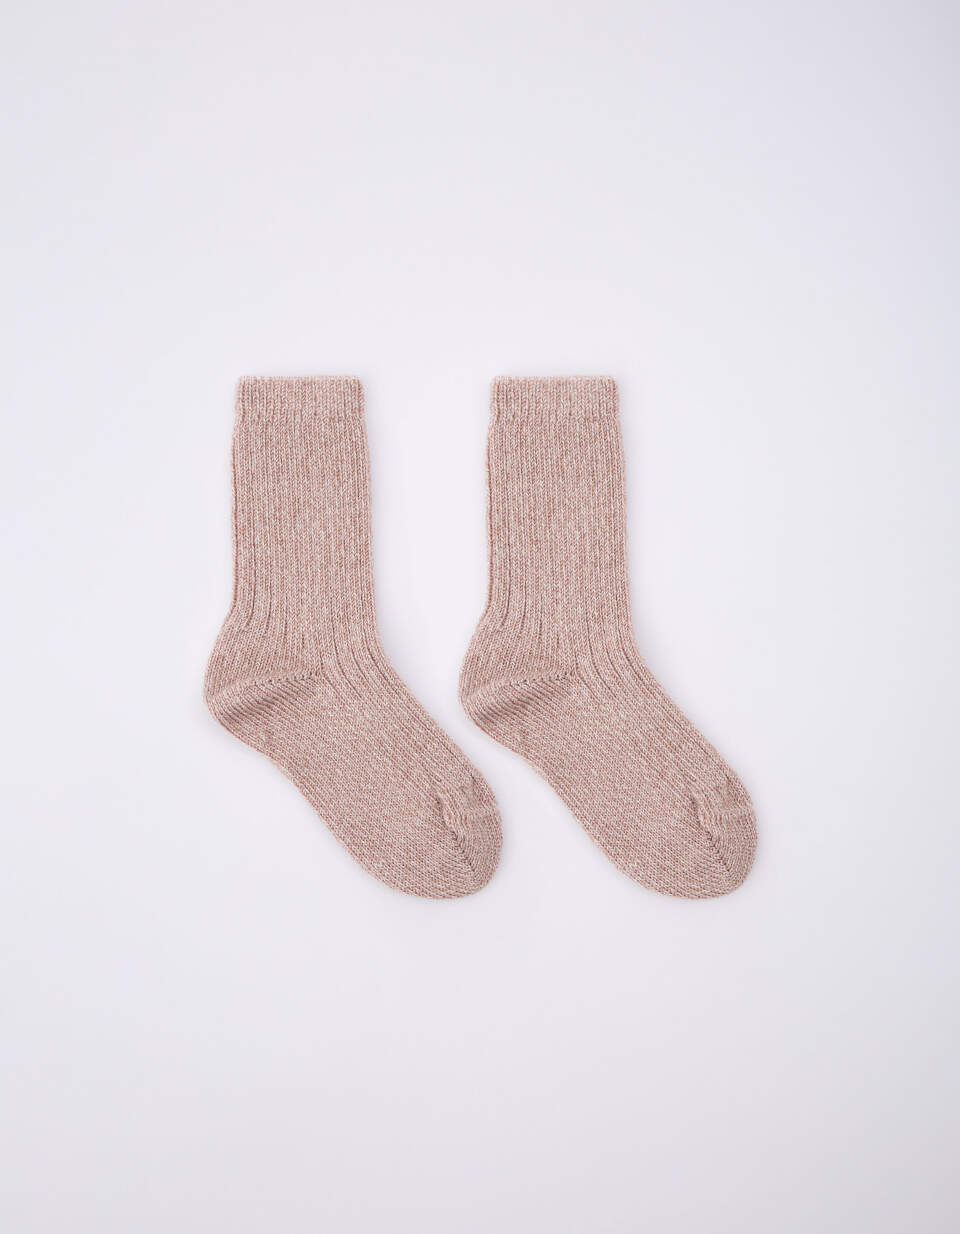 Вязаные носки шерстяные для девочек 1 пара гетр носки сезон осень зима спортивная женская обувь для девочек в рубчик гетры вязаные носки для вечерние